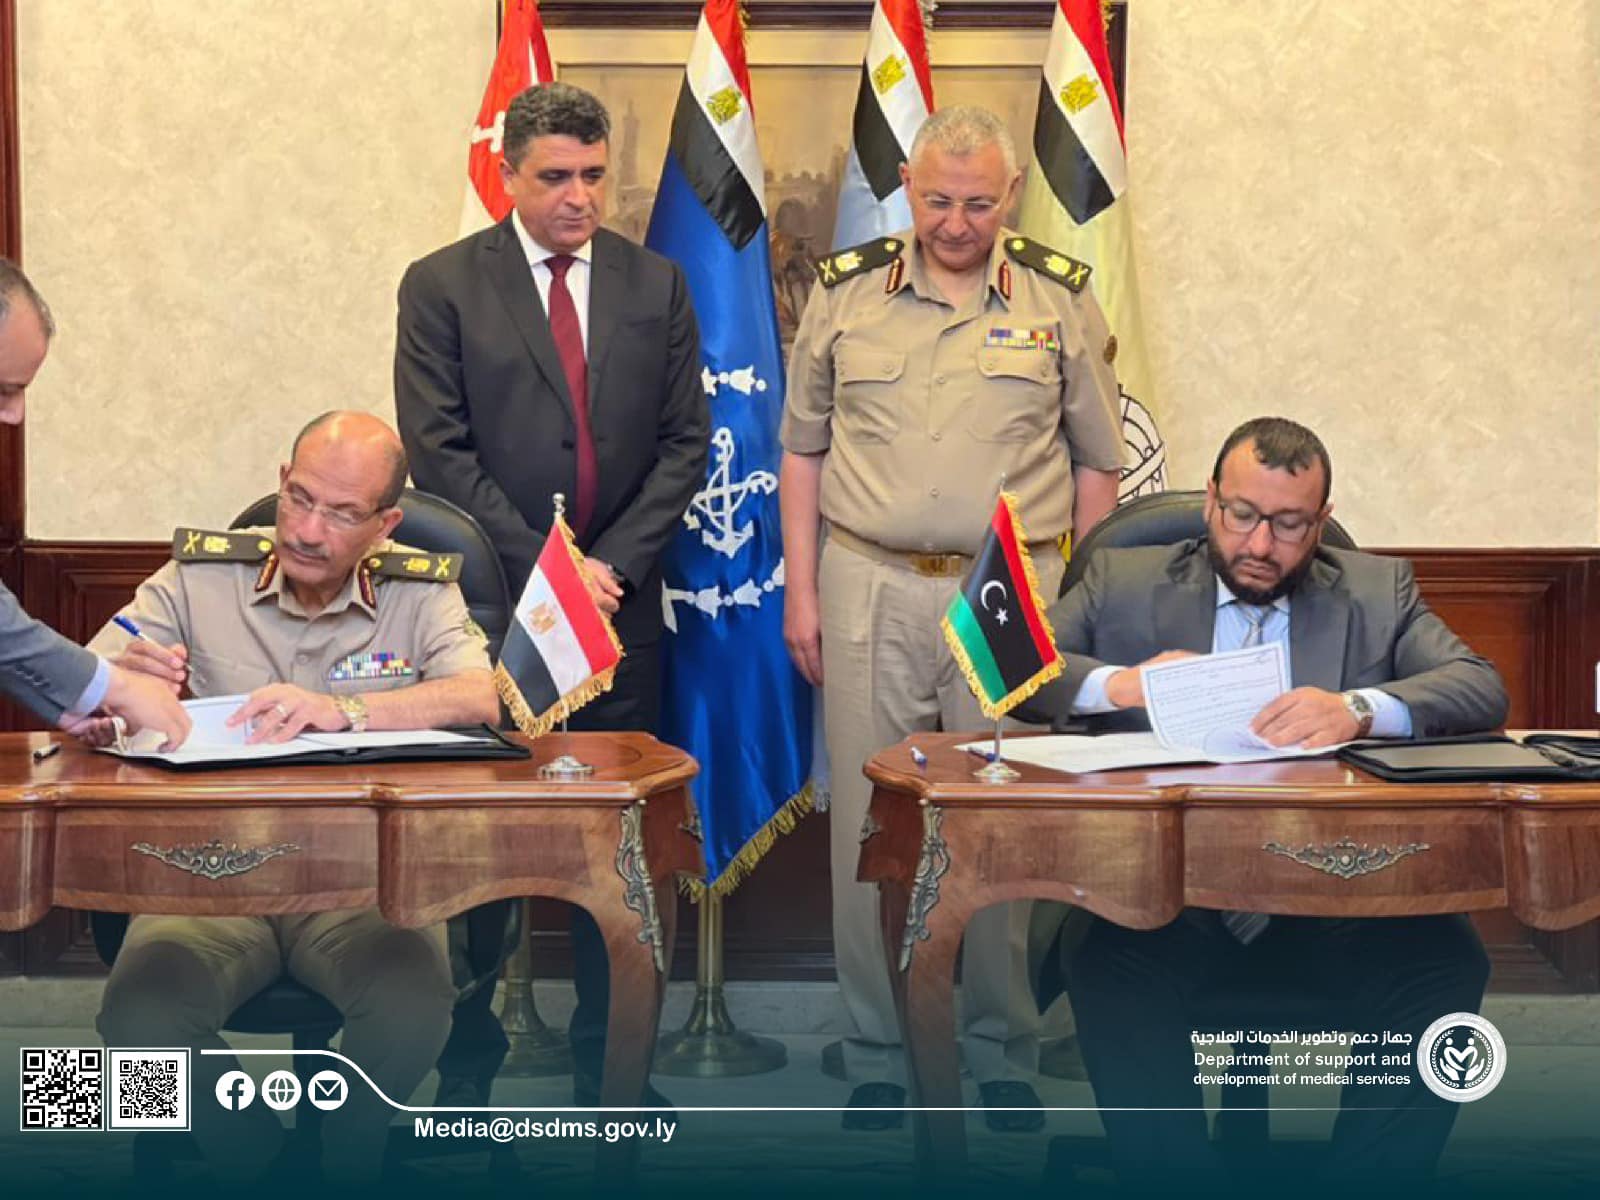 توقيع اتفاقية تفاهم بين جهاز دعم وتطوير الخدمات العلاجية مع مركز الطب العالمي في مصر